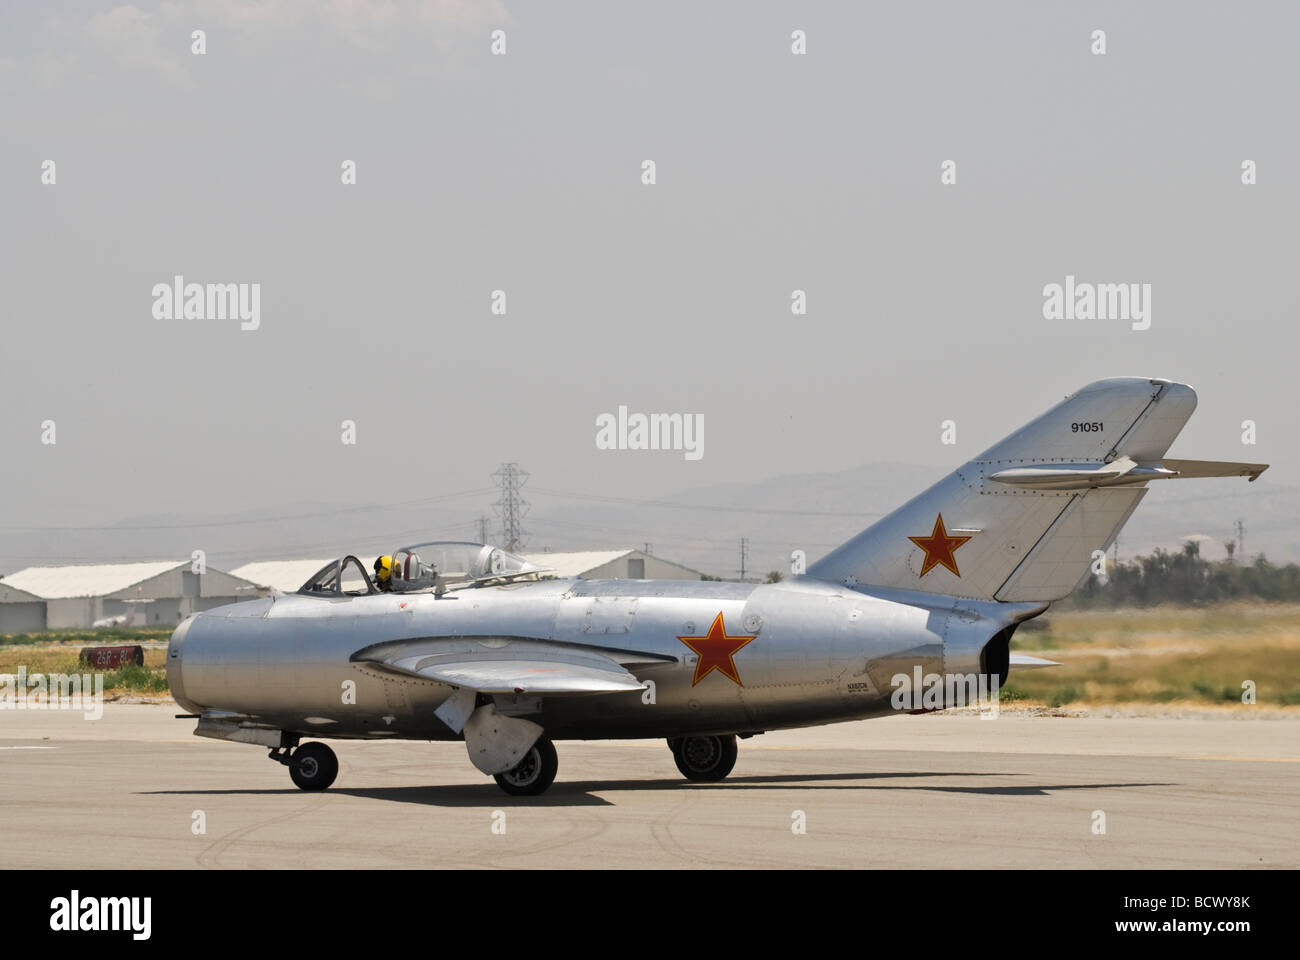 Un MiG-15 taxis en la pista después de aterrizar en un festival aéreo. Foto de stock